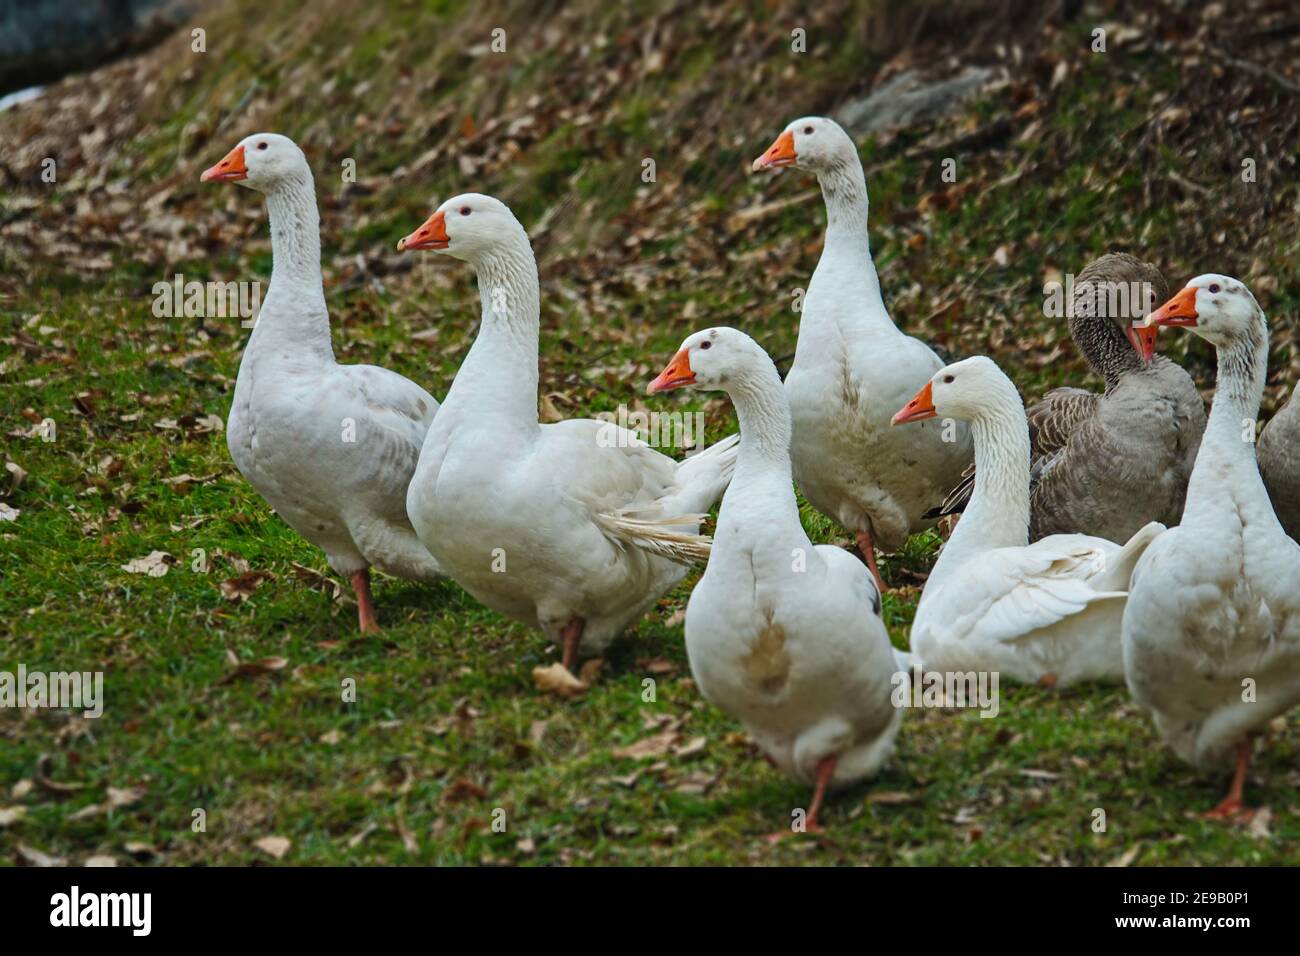 Eine Gruppe von weißen Enten und Gänsen mit Orangenschnabel domestizierte Vögel für Fleisch und Federn. Stockfoto